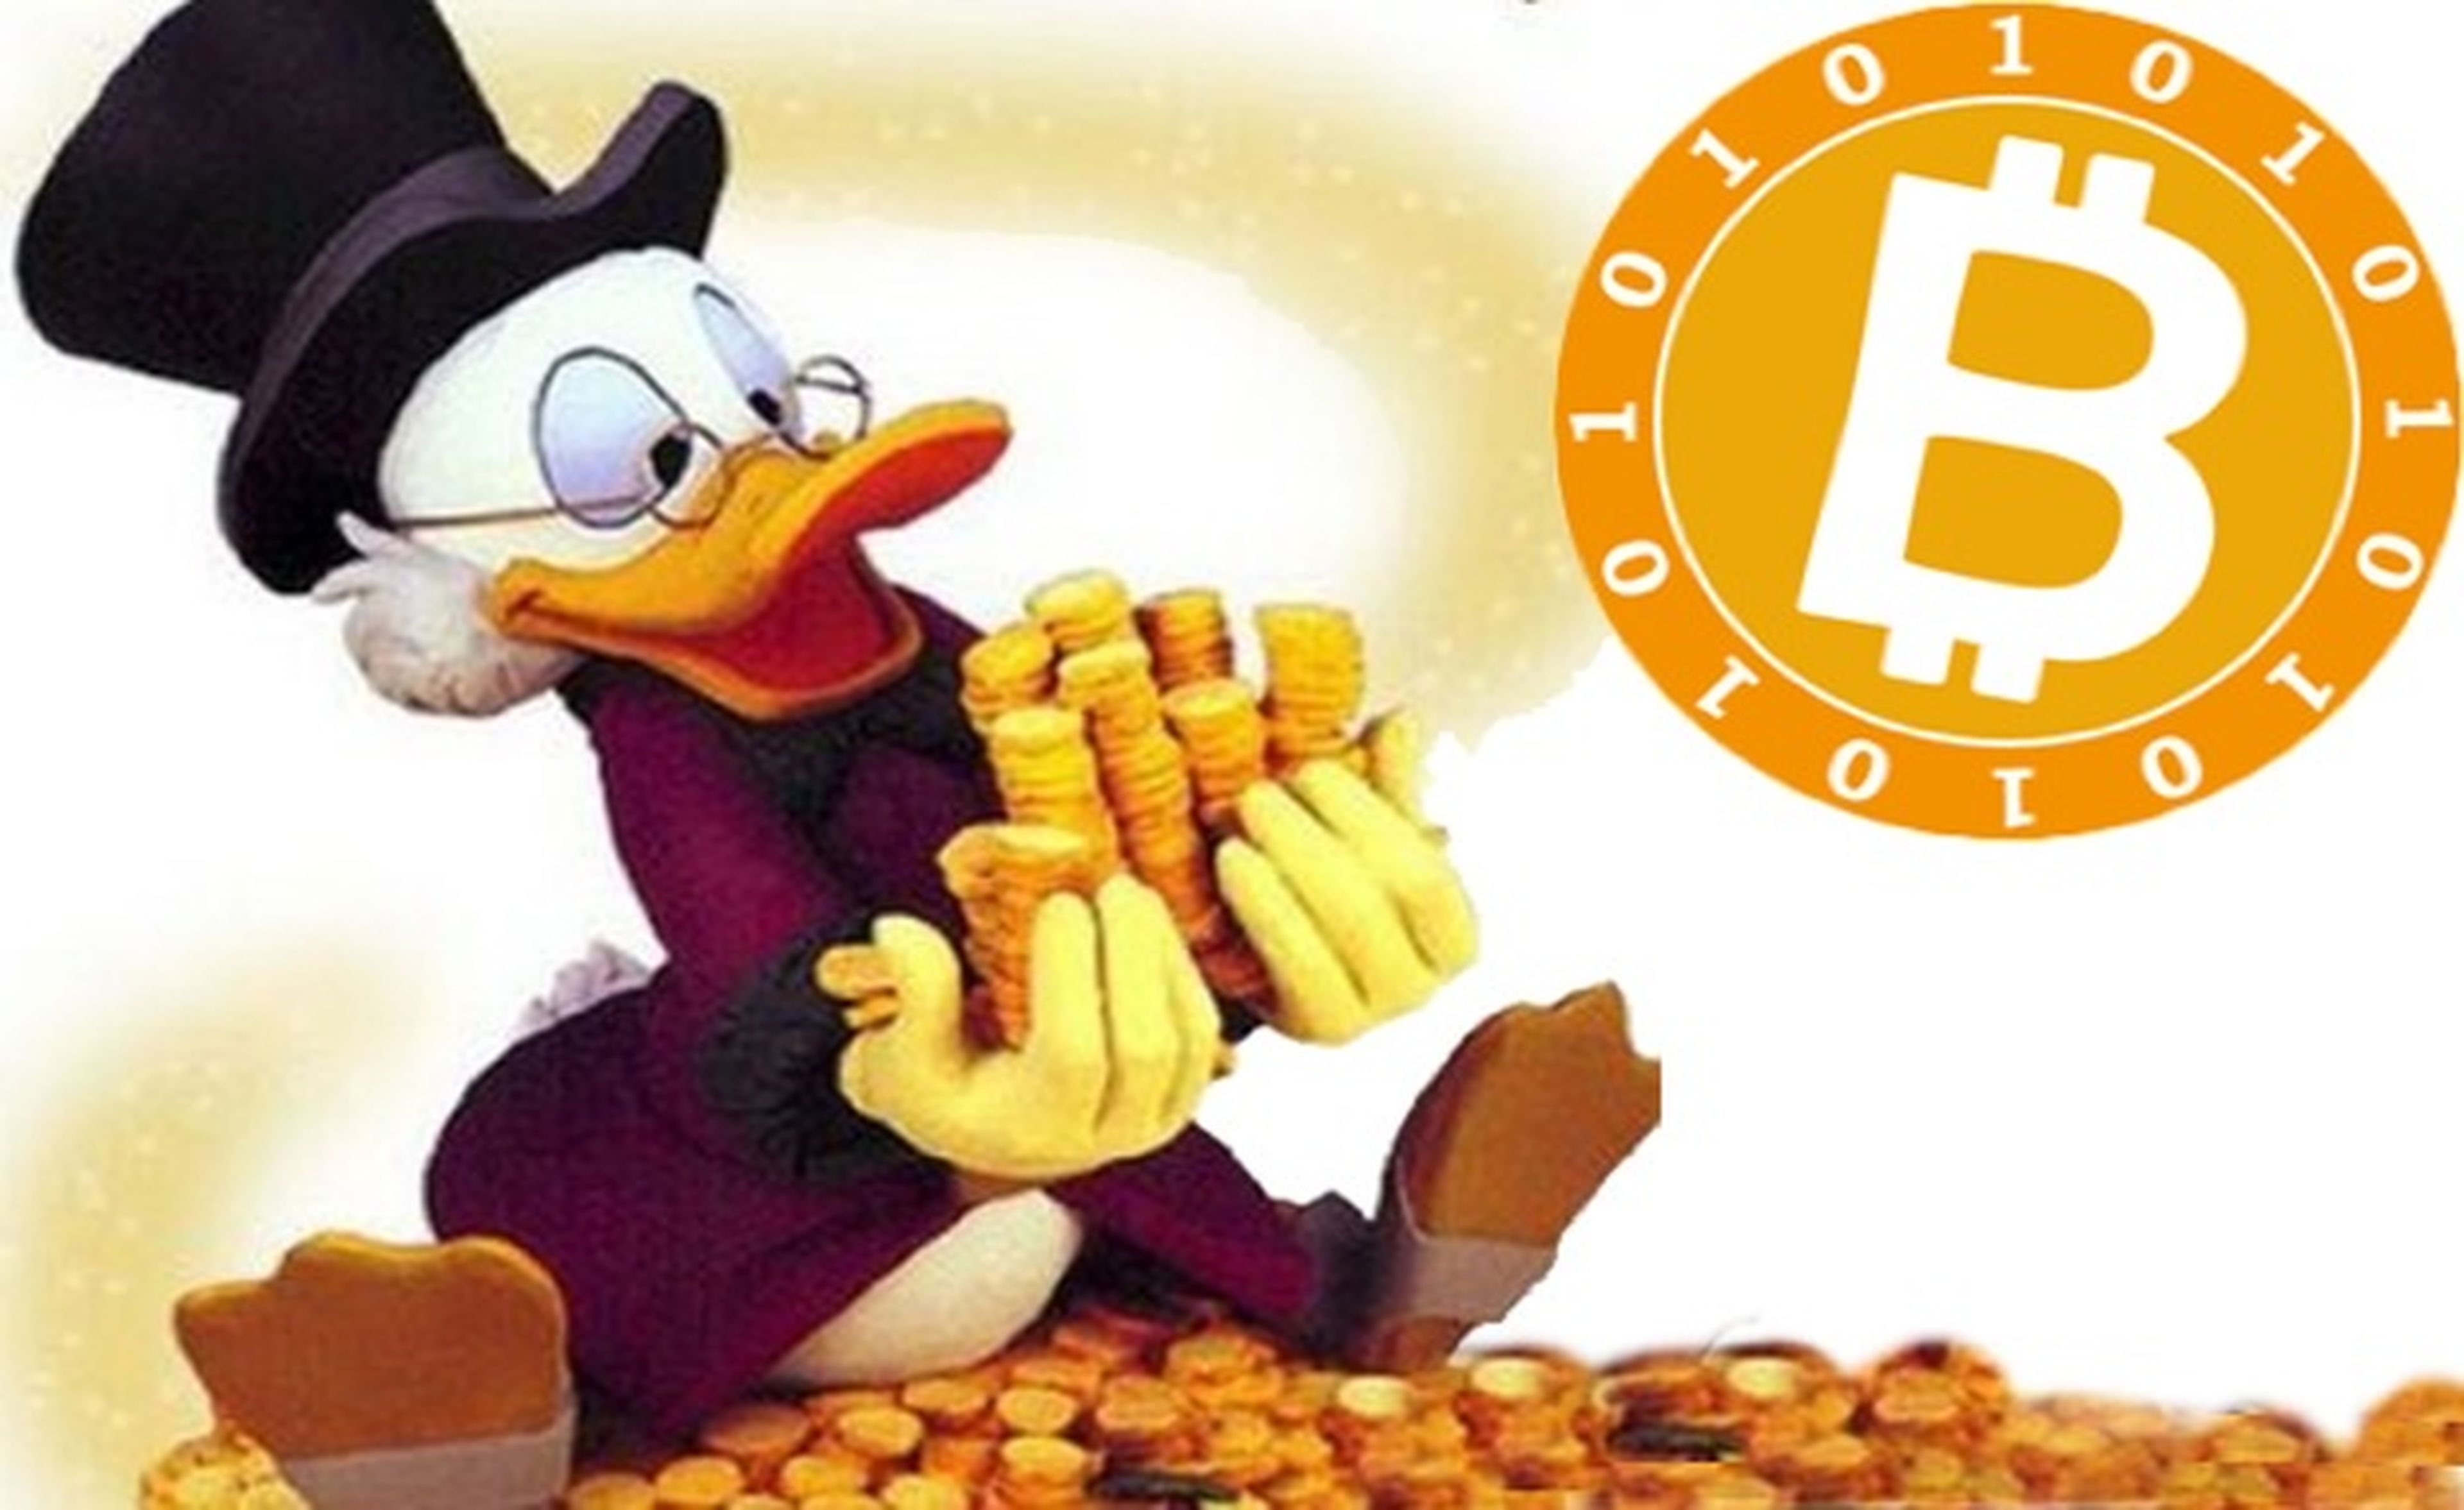 Hombre redescubre pequeña fortuna de $885.000 en bitcoins